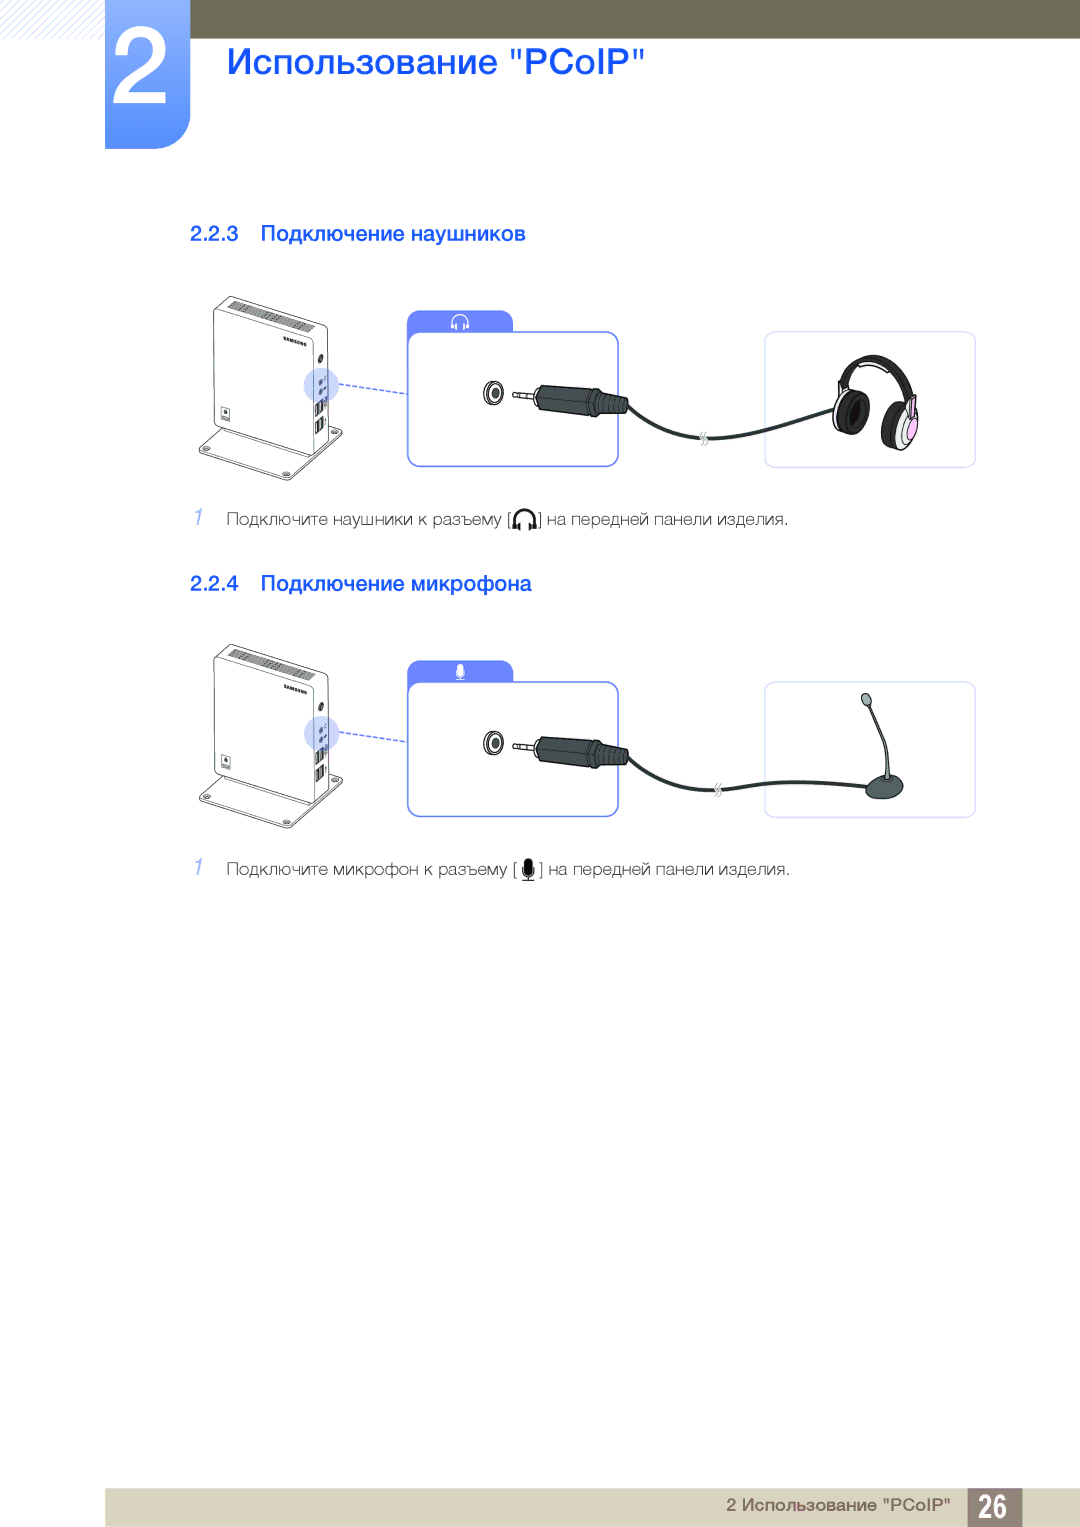 Samsung LF00FNXPFBZXCI manual 3 Подключение наушников, 4 Подключение микрофона 